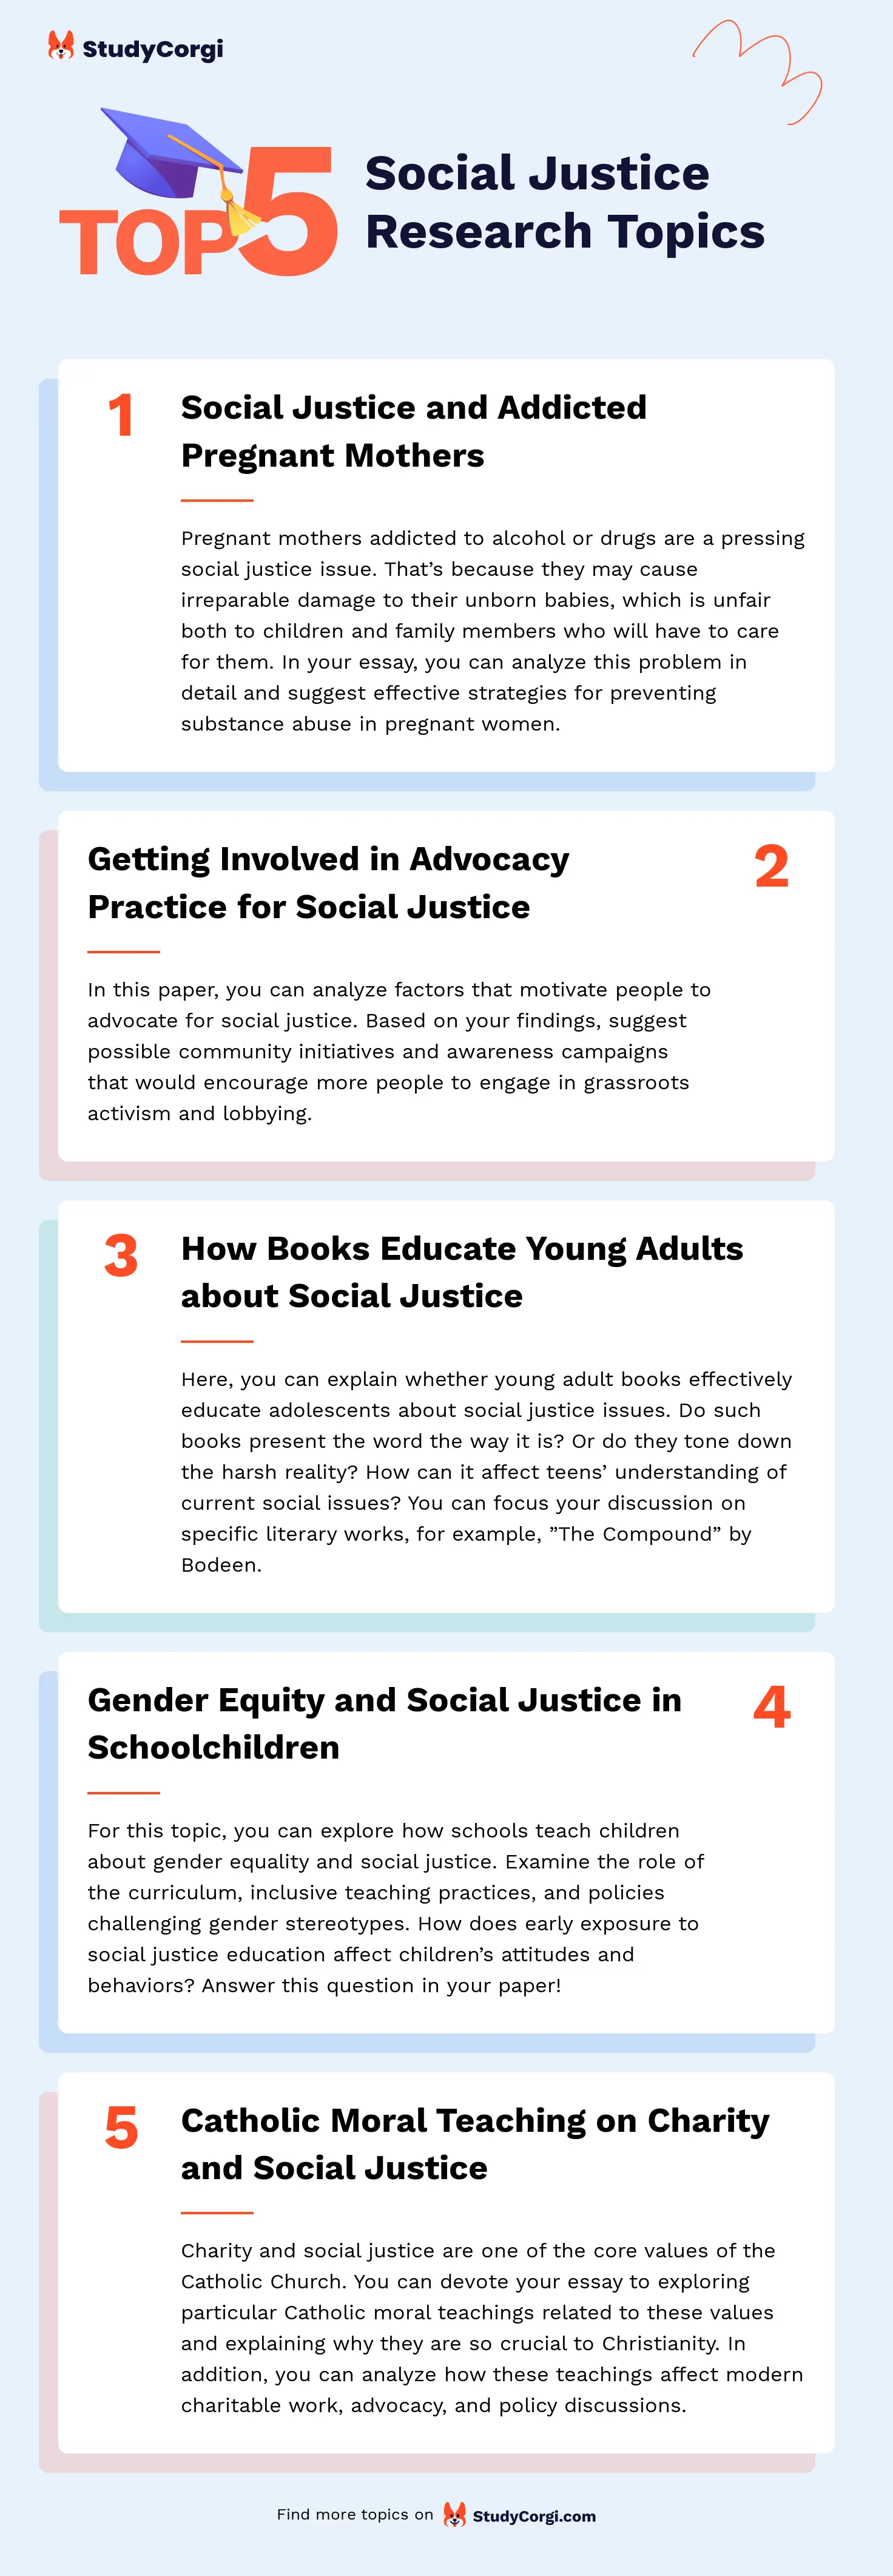 TOP-5 Social Justice Research Topics